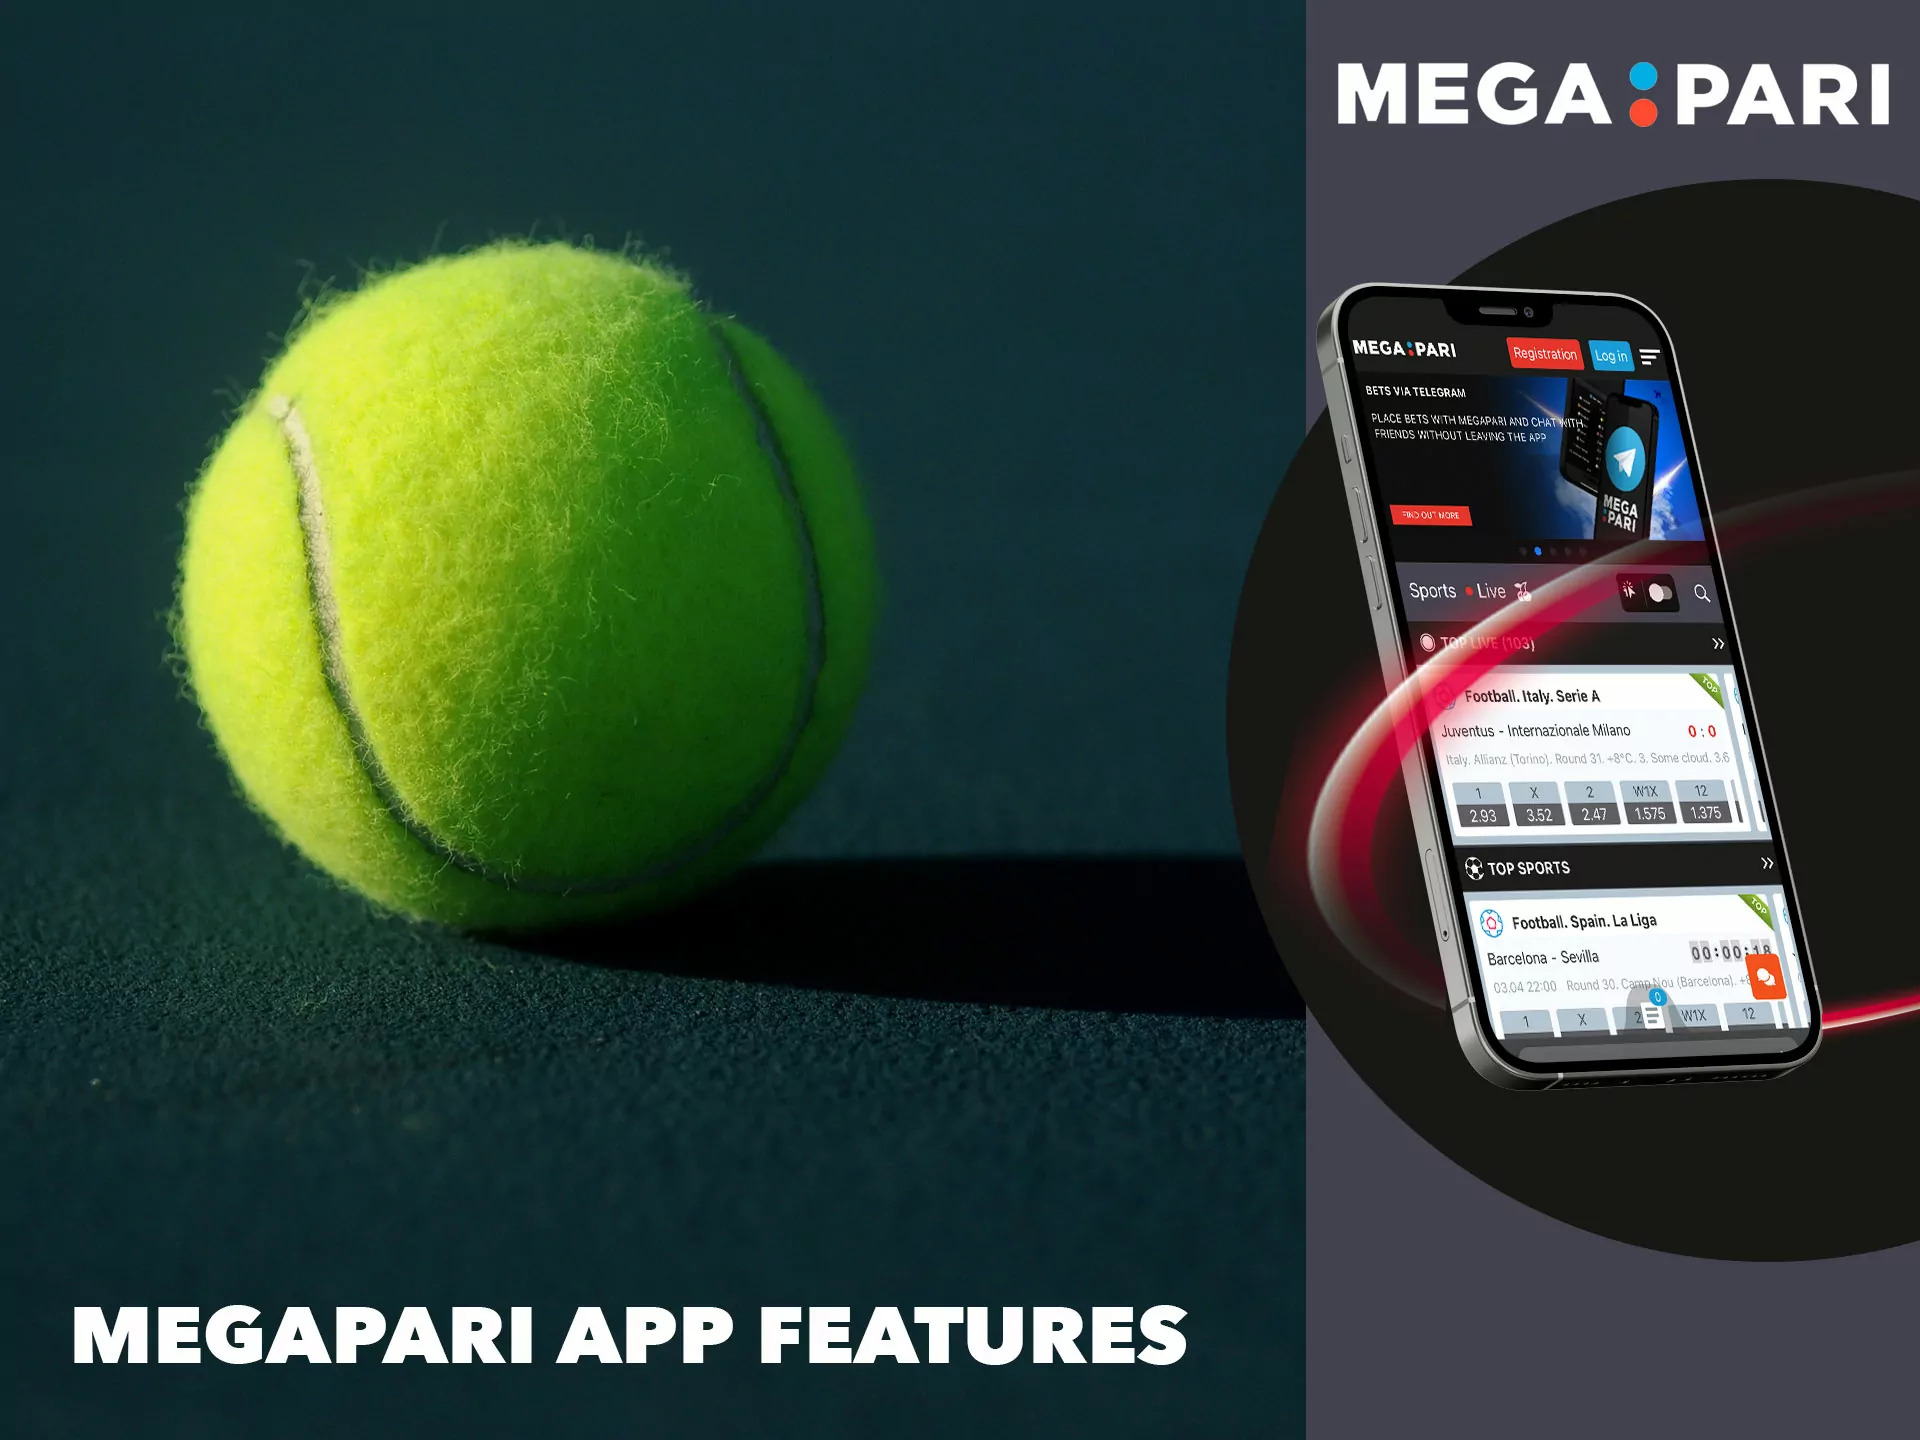 Each application has unique properties, Megapari is no exception.